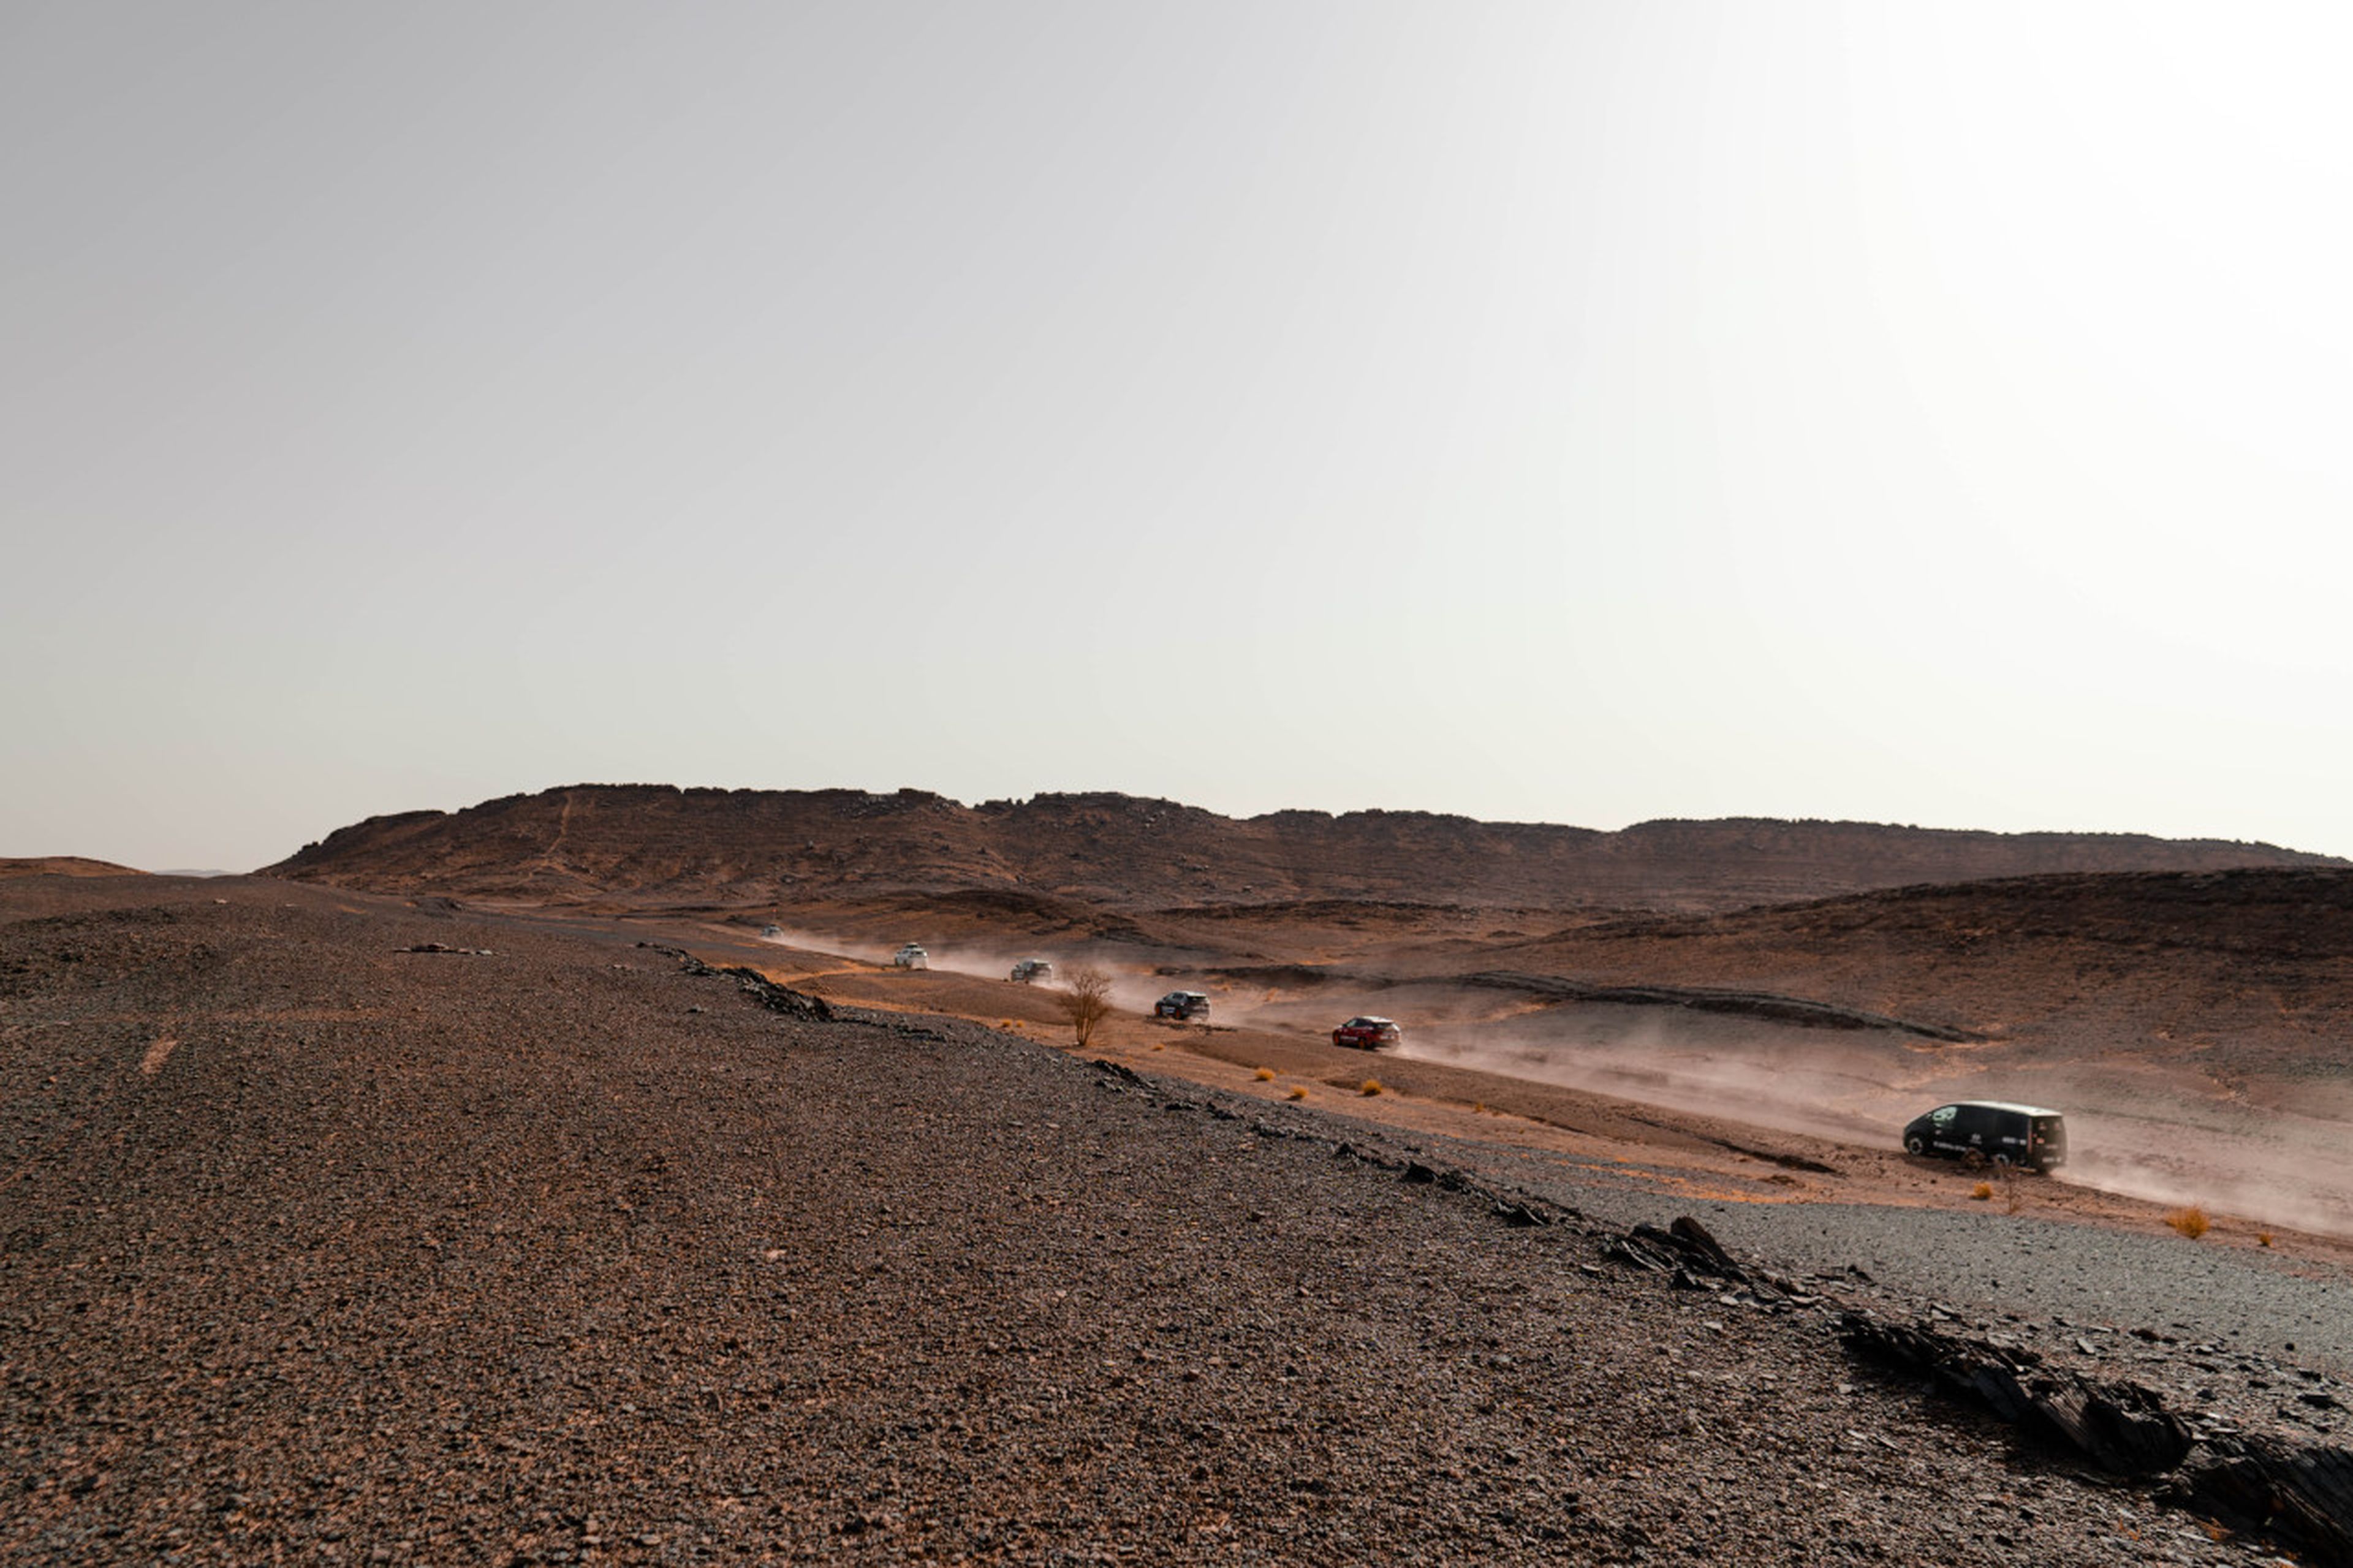 Lo más parecido a un paisaje marciano... y a menos de 800 km de la Península Ibérica